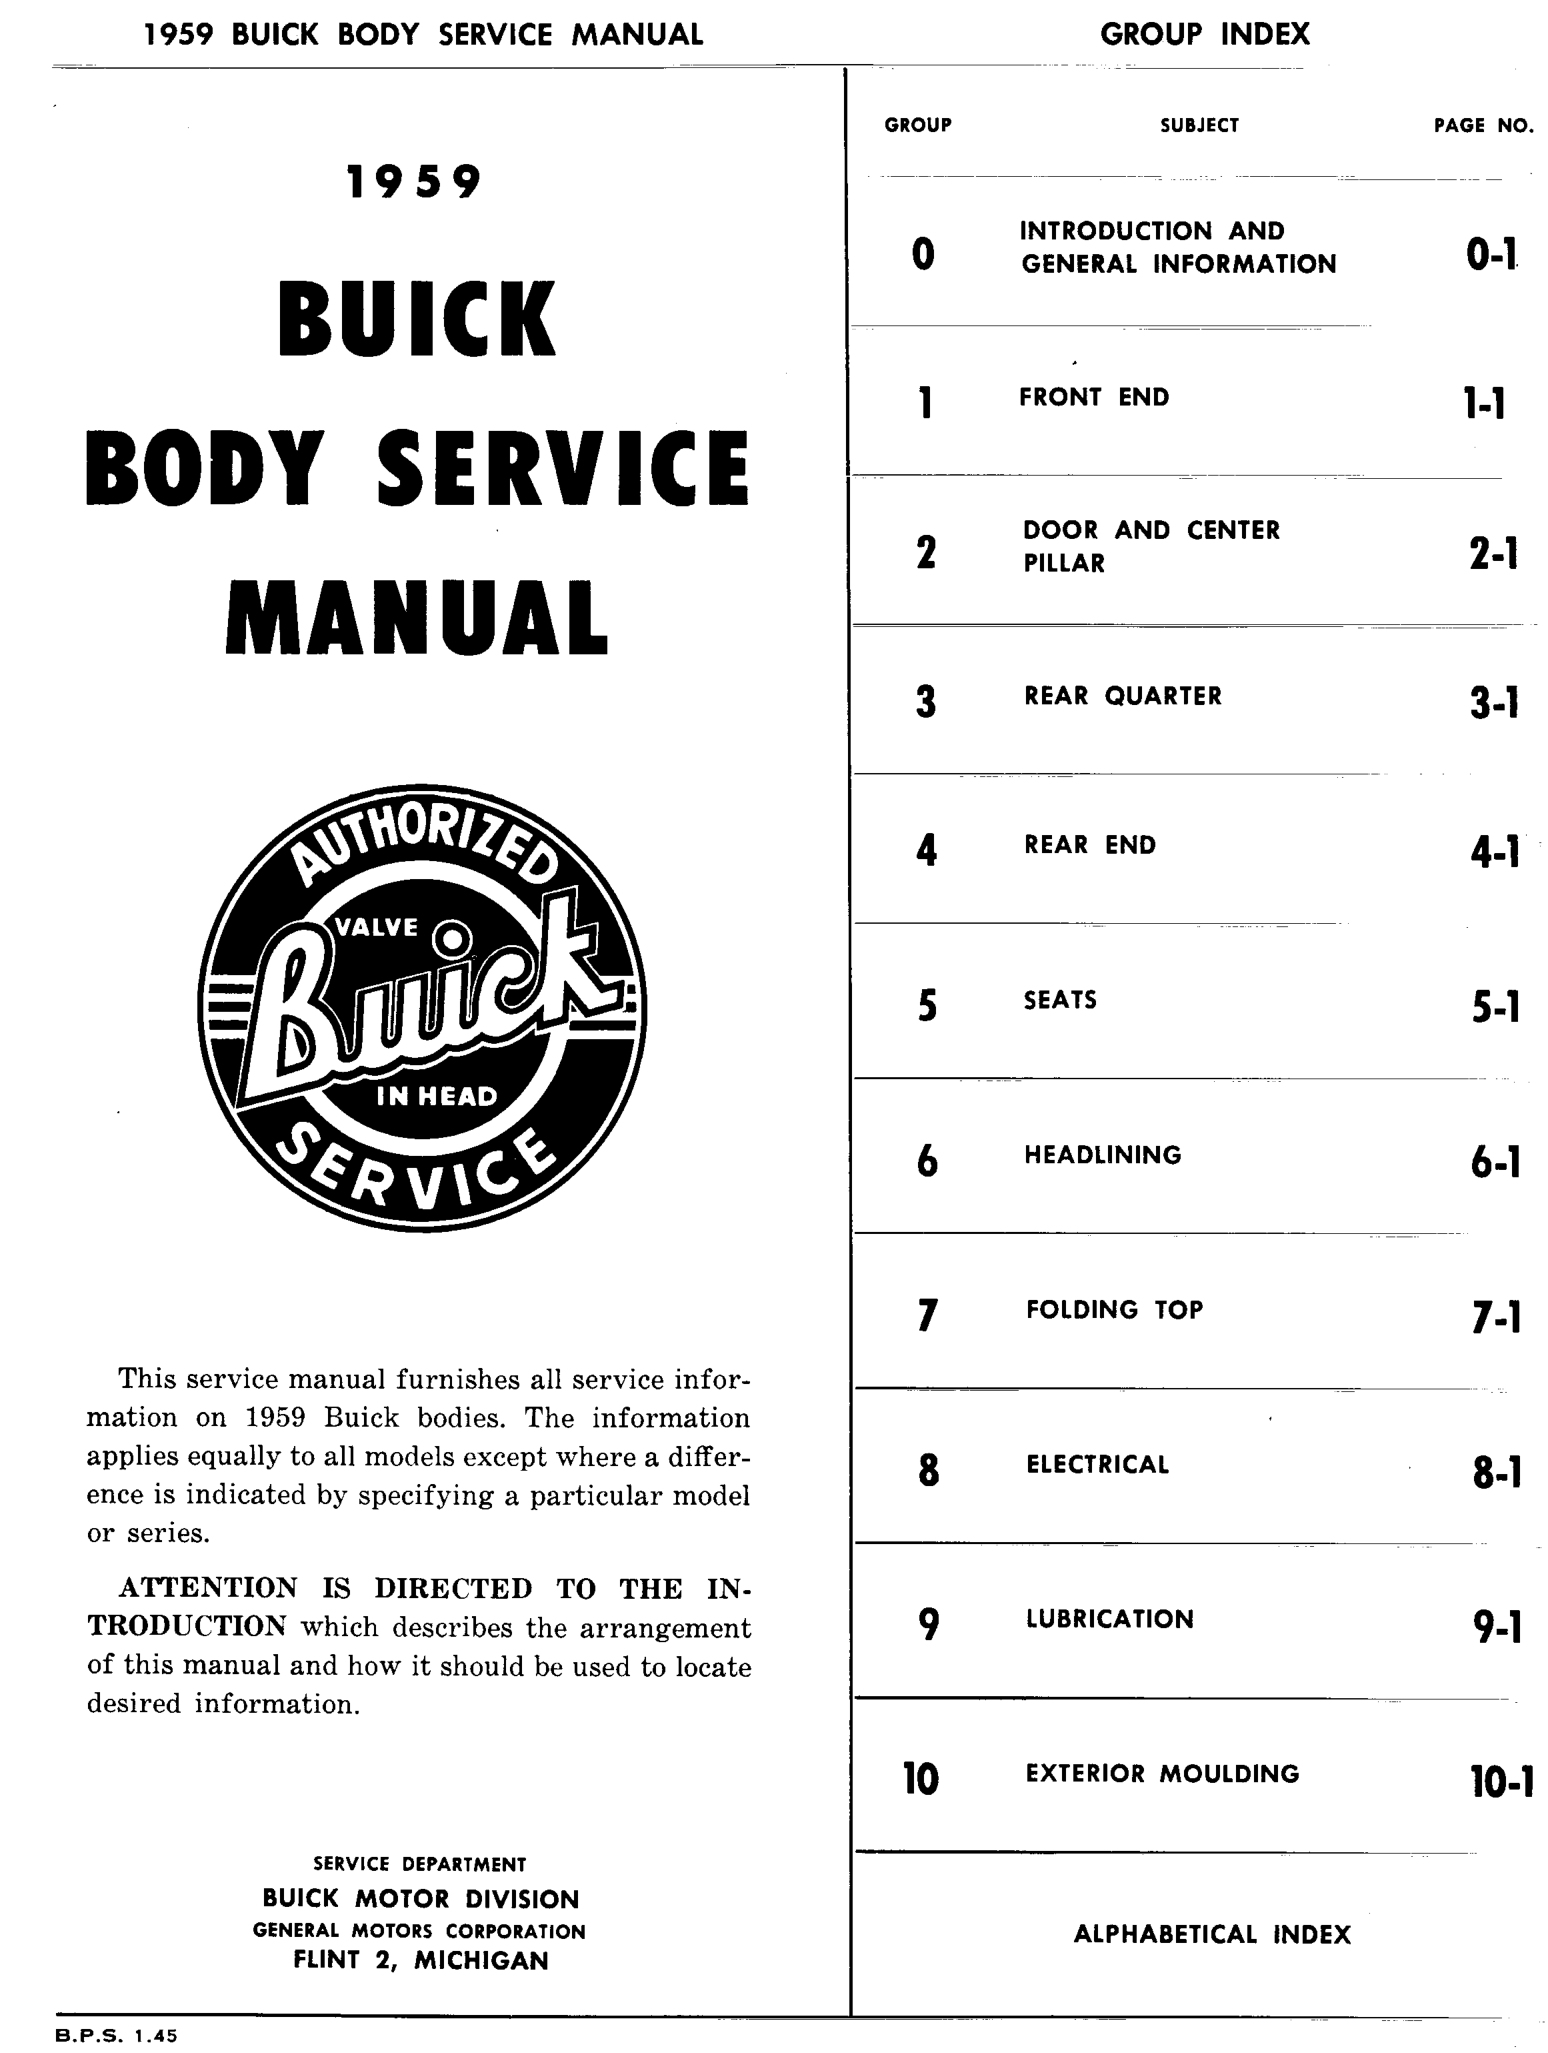 n_01 1959 Buick Body Service-Gen Information_2.jpg